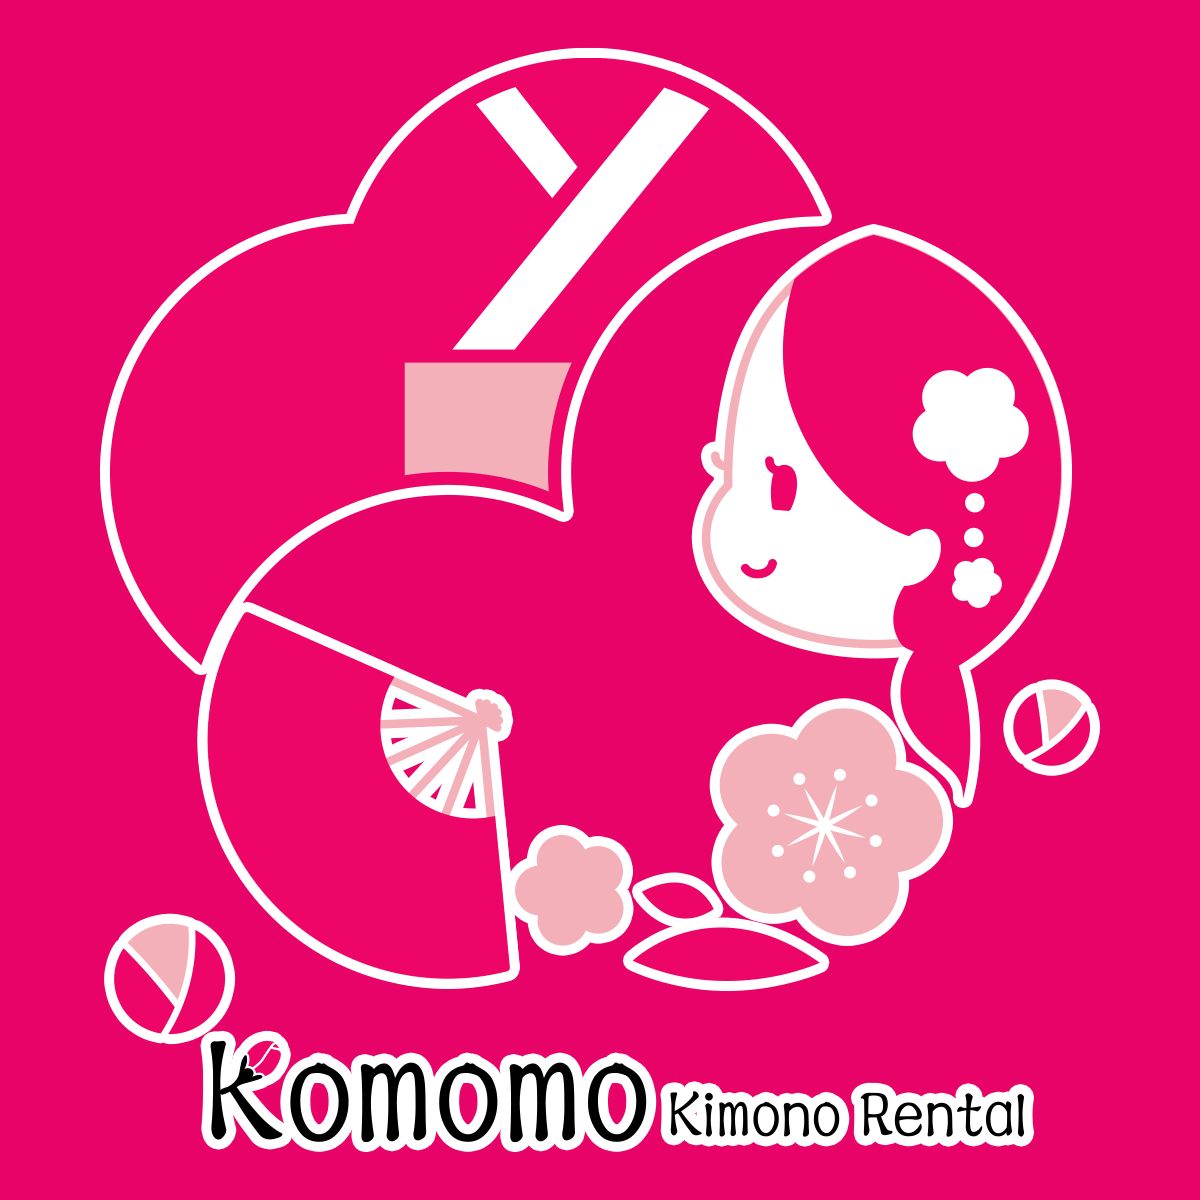 Asakusa rental kimono Komomo